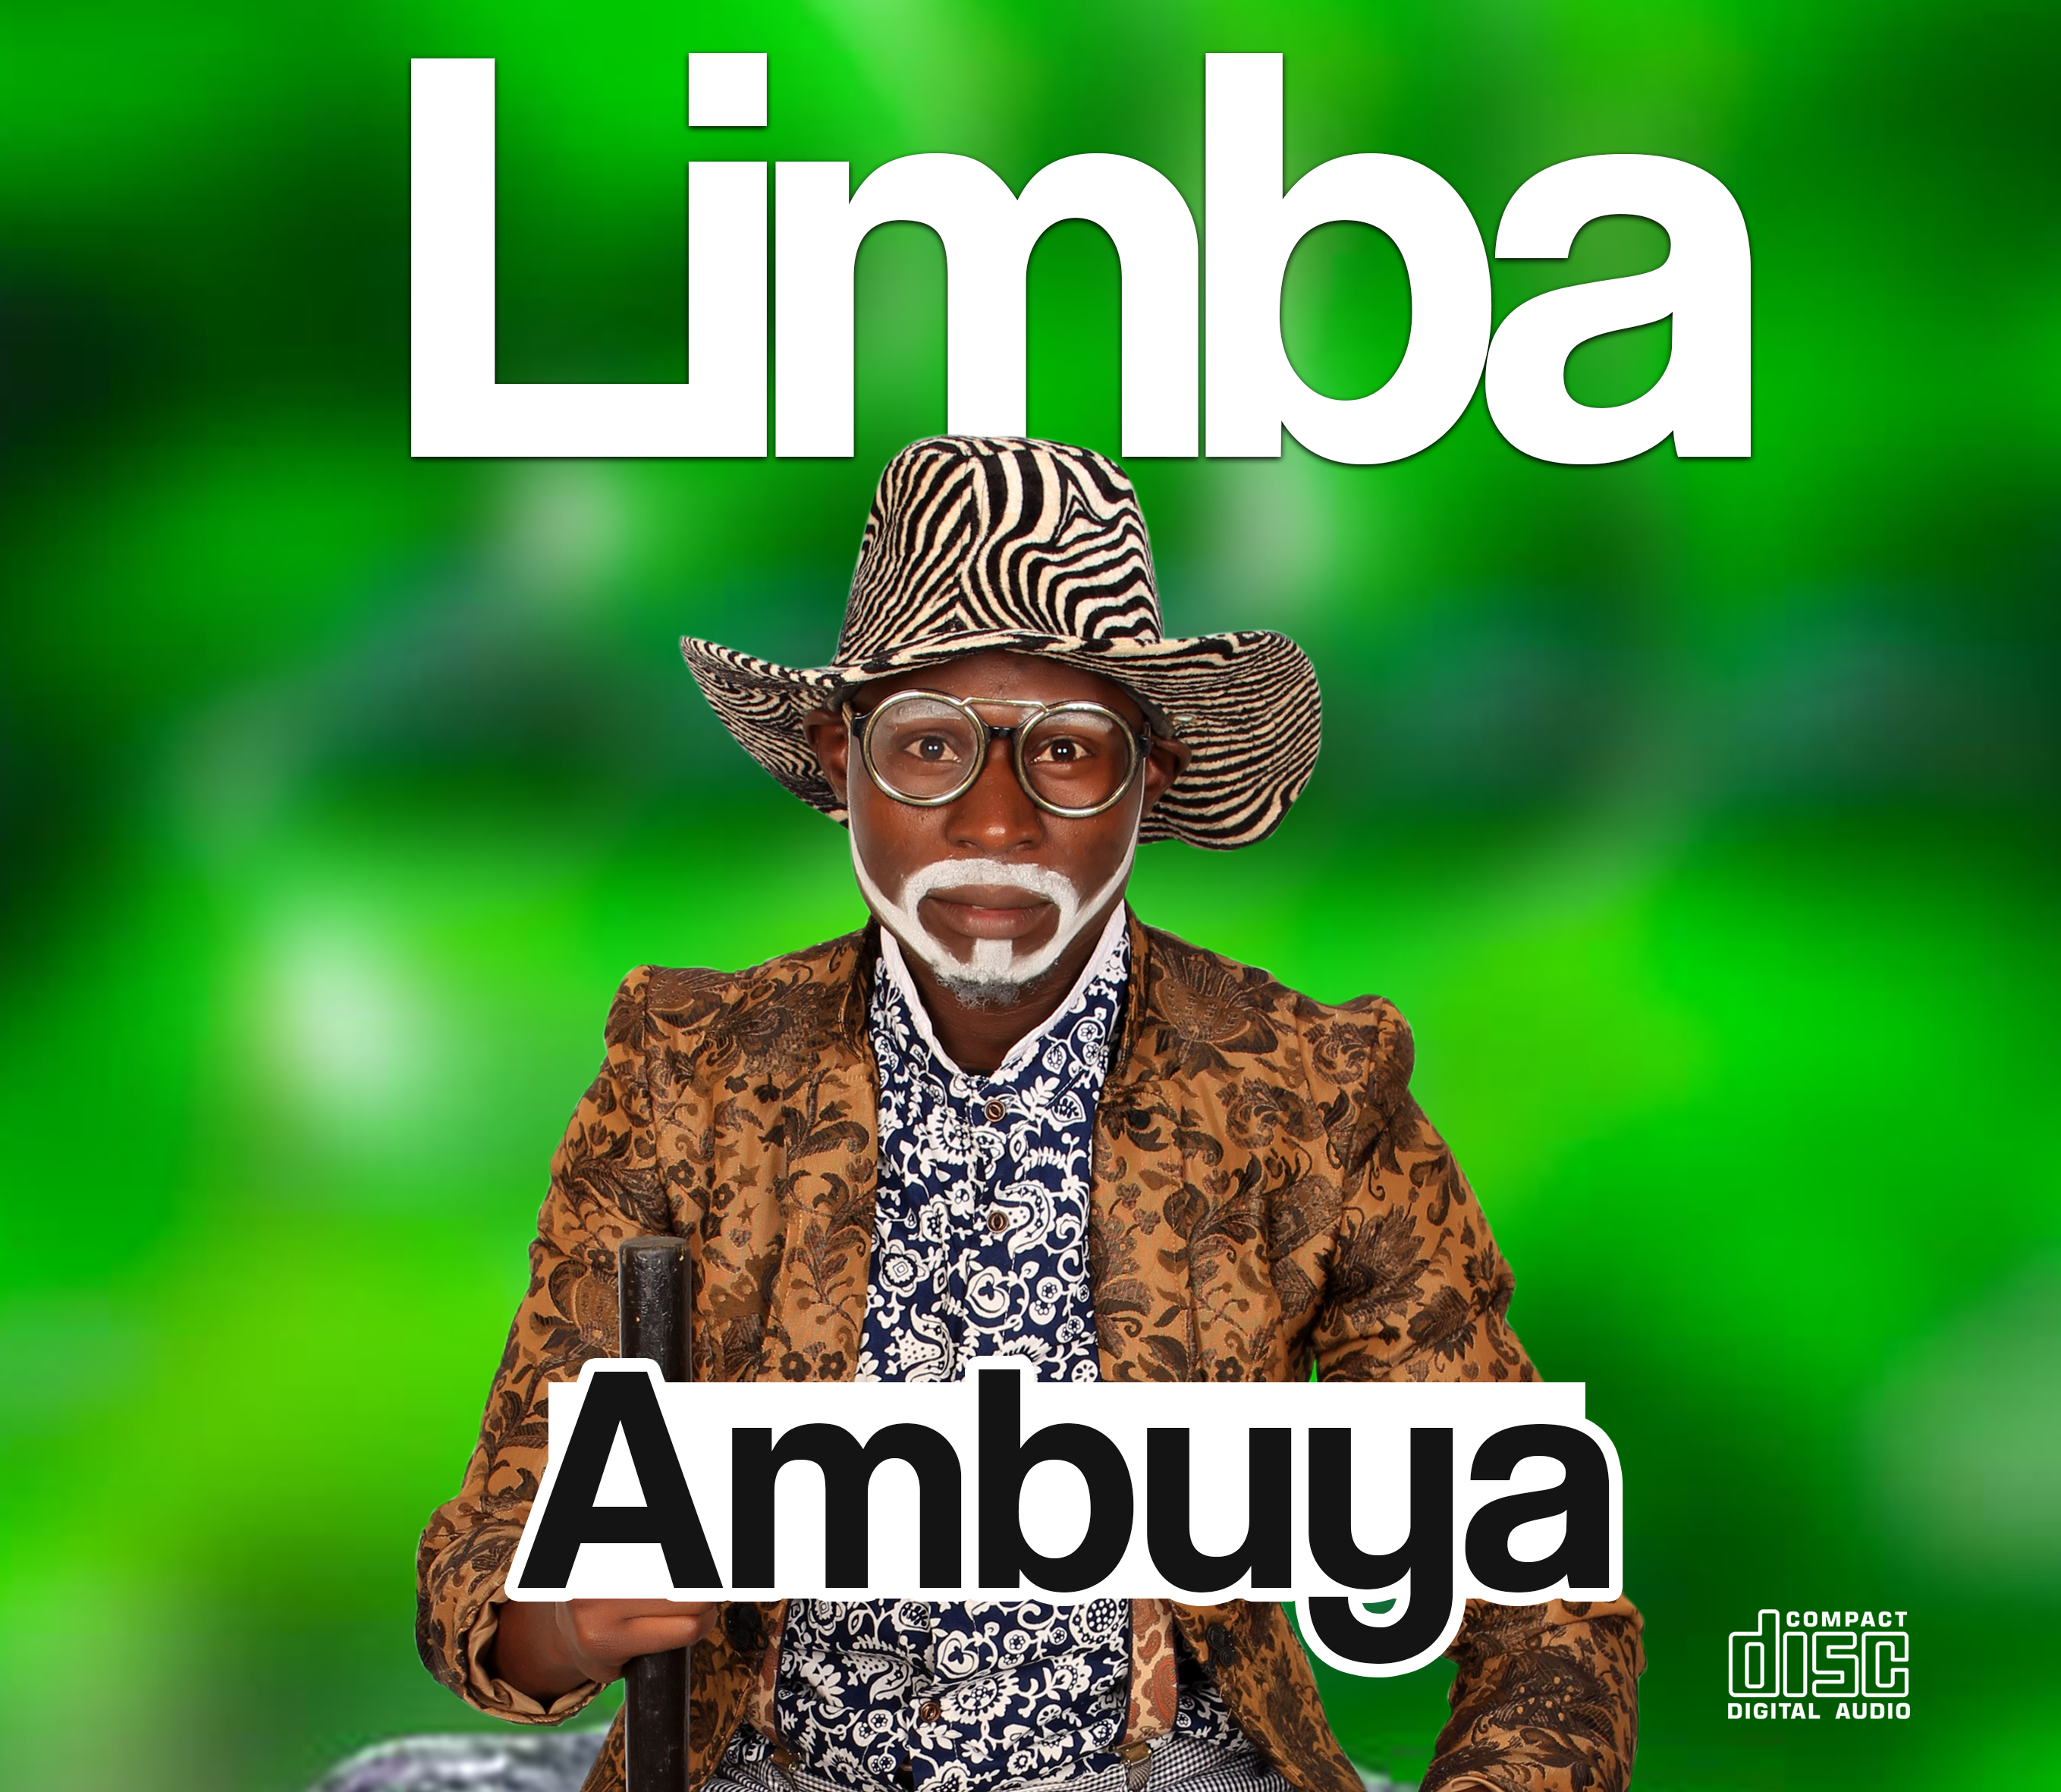 Limba by Ambuya | Album